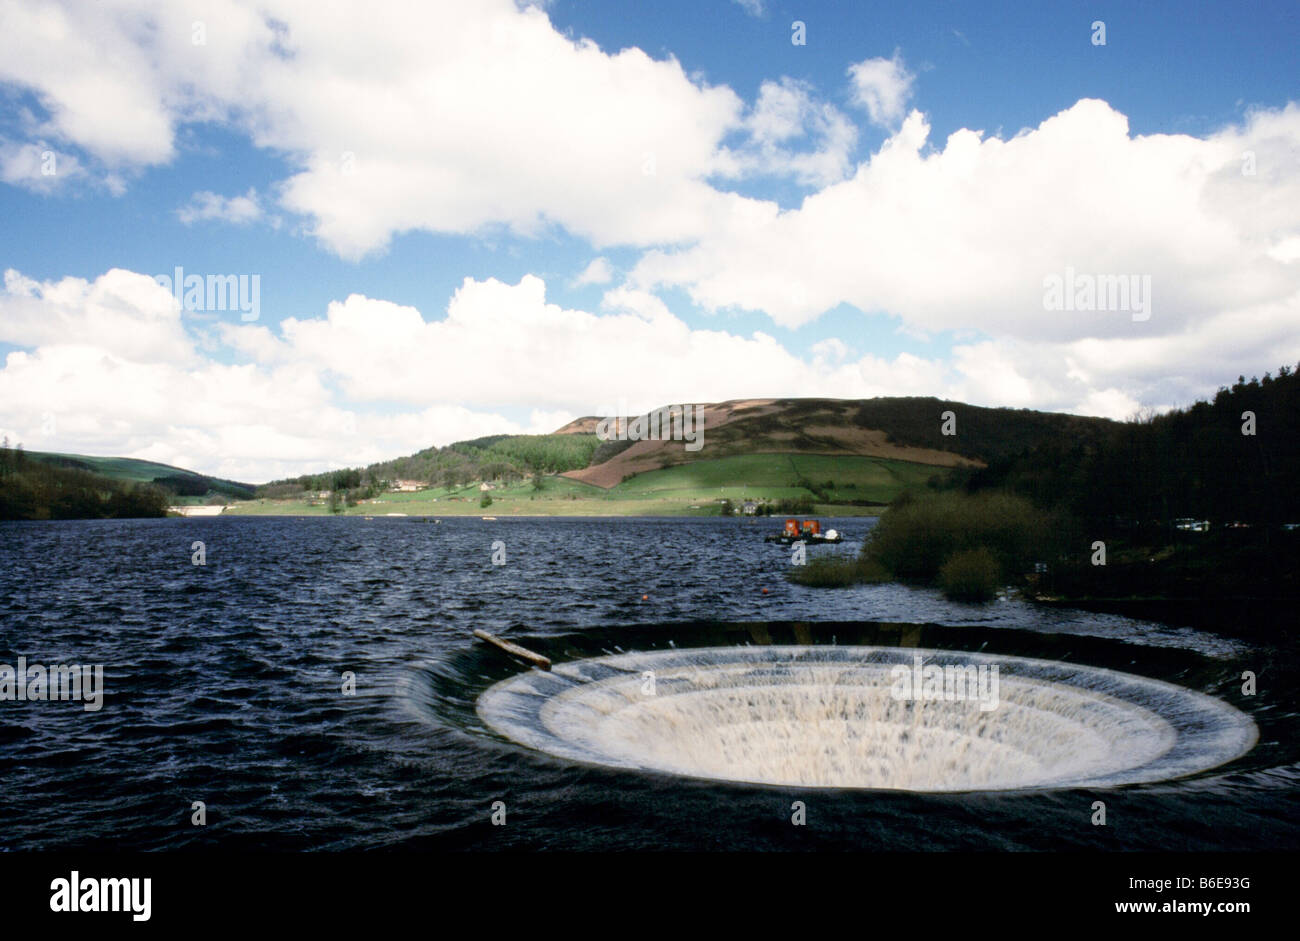 Lady-bower reservoir plug-hole Stock Photo